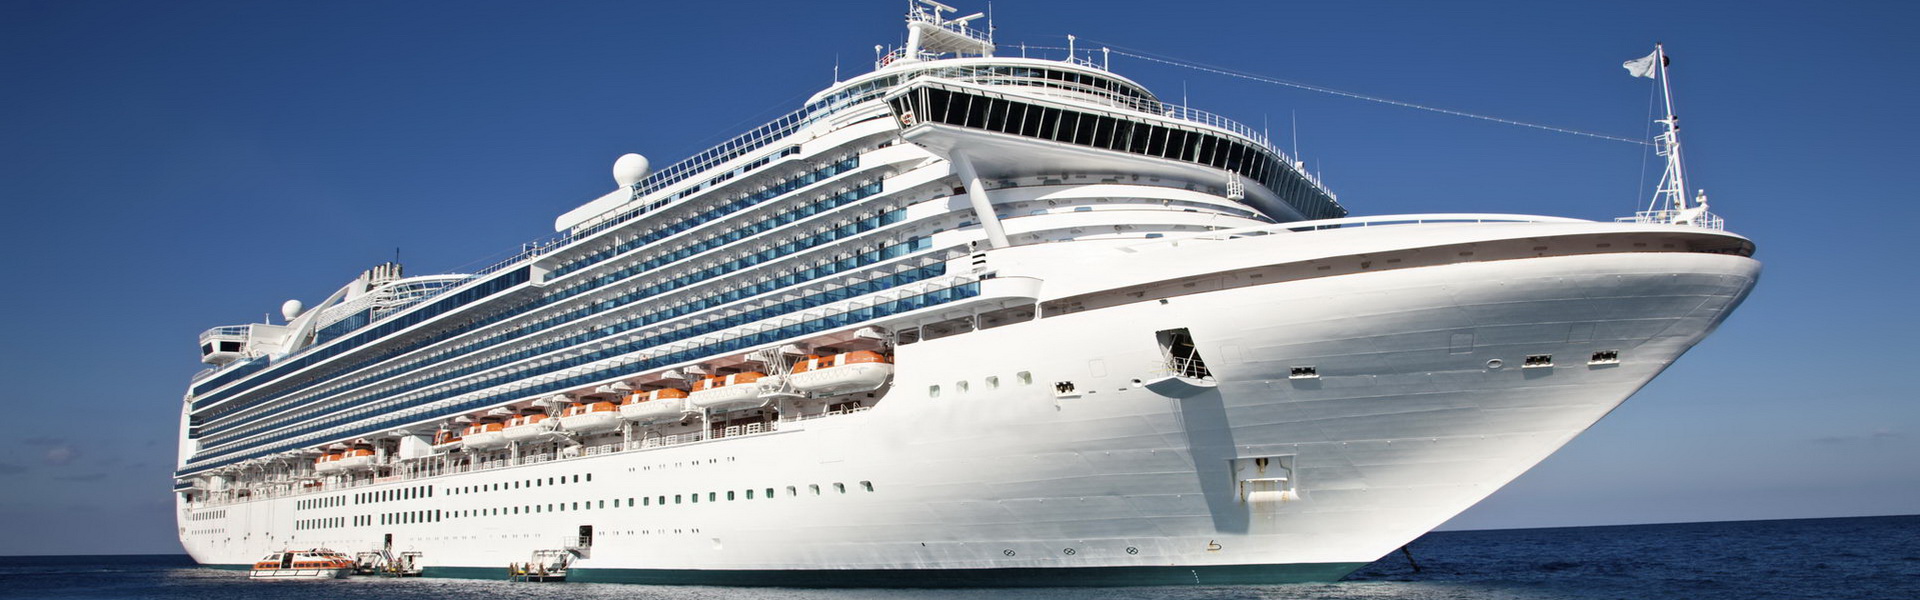 Cruise Ships, Travel, Leisure & Hospitality